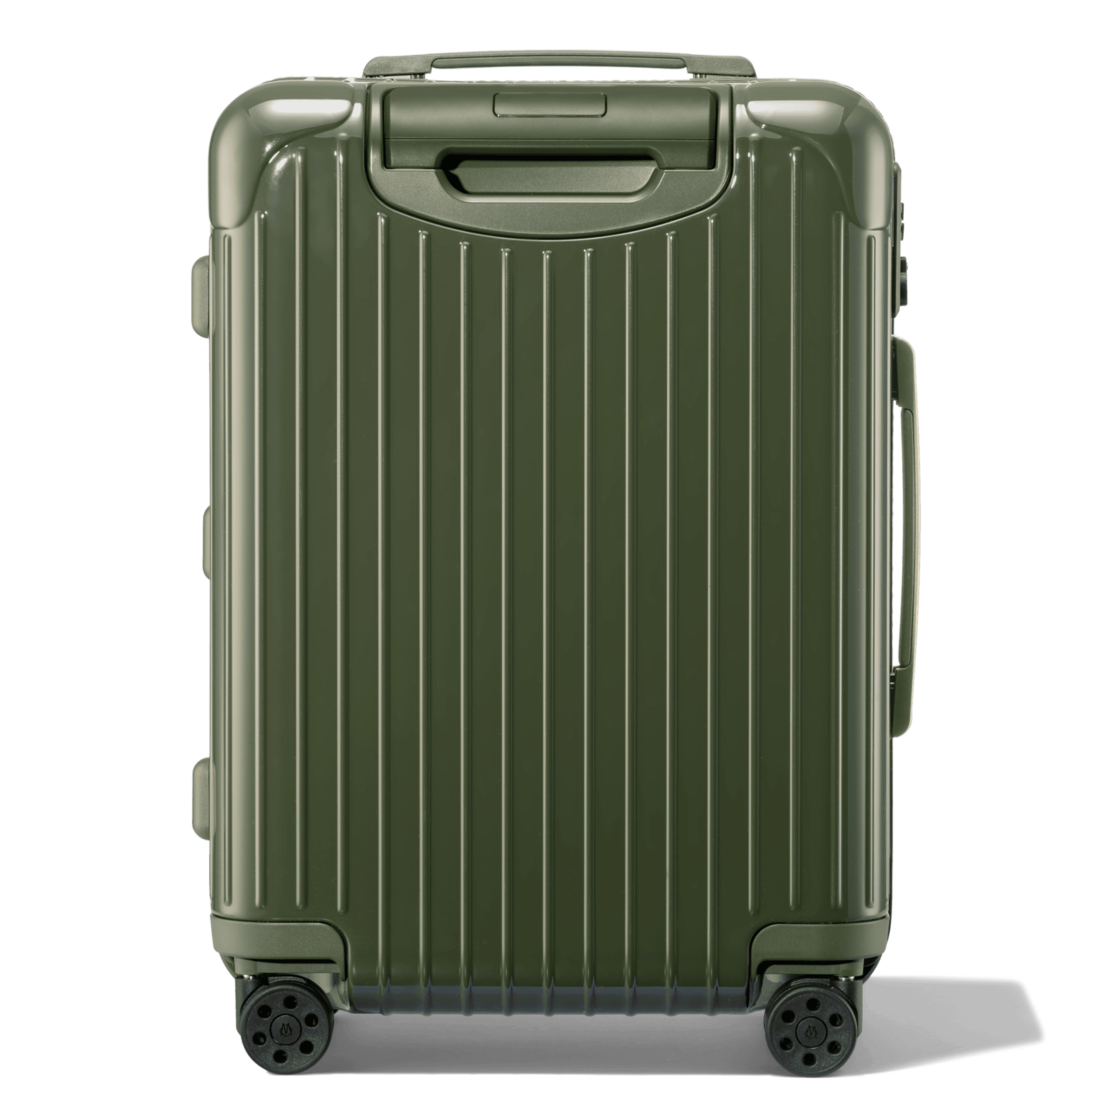 rimowa lightweight cabin luggage